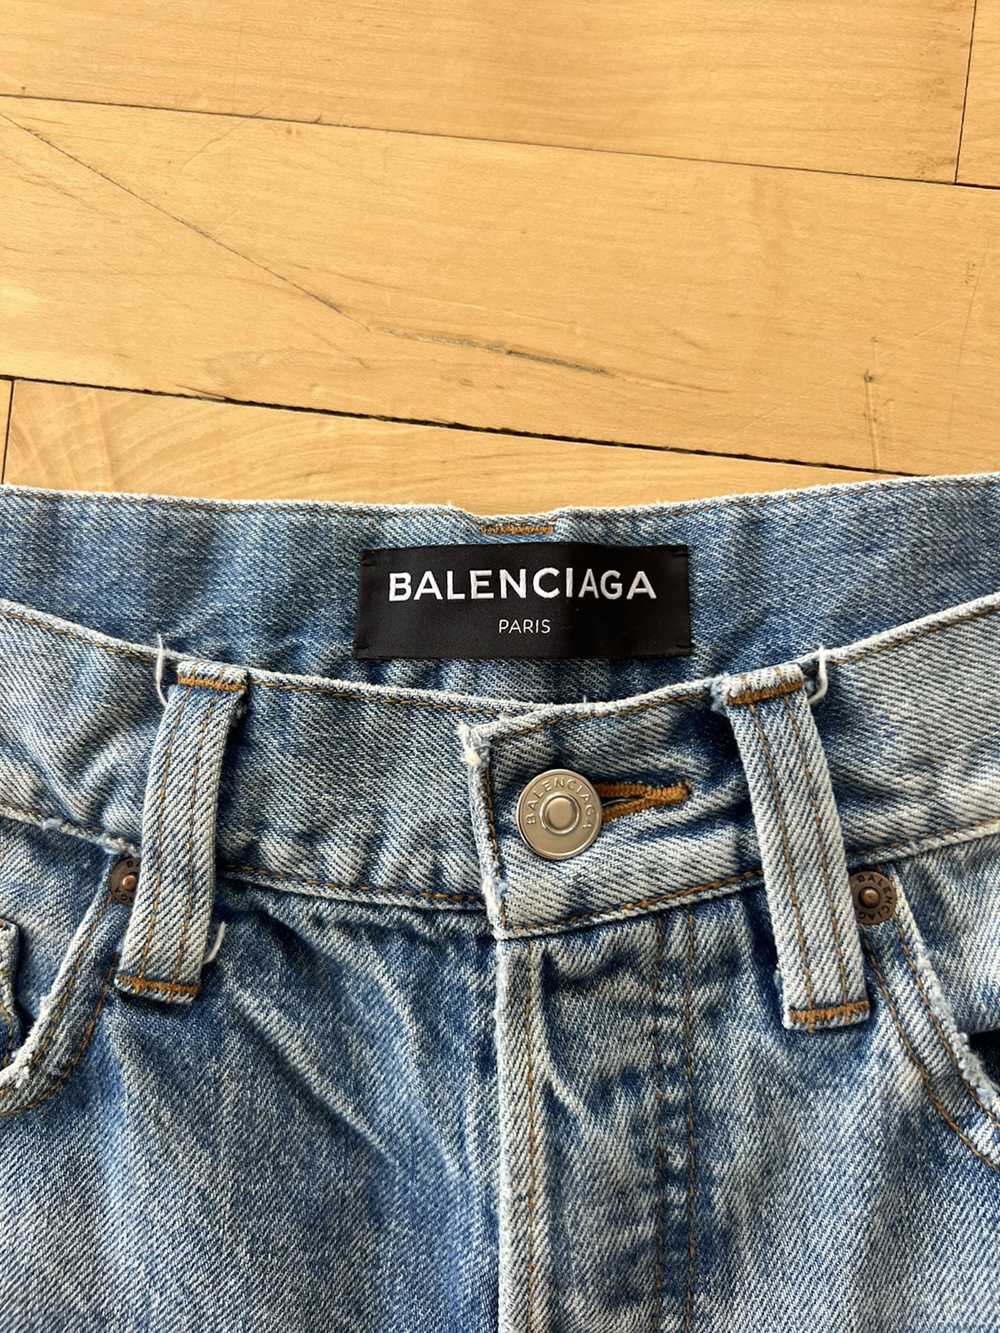 Balenciaga Balenciaga Denim Shorts - image 3